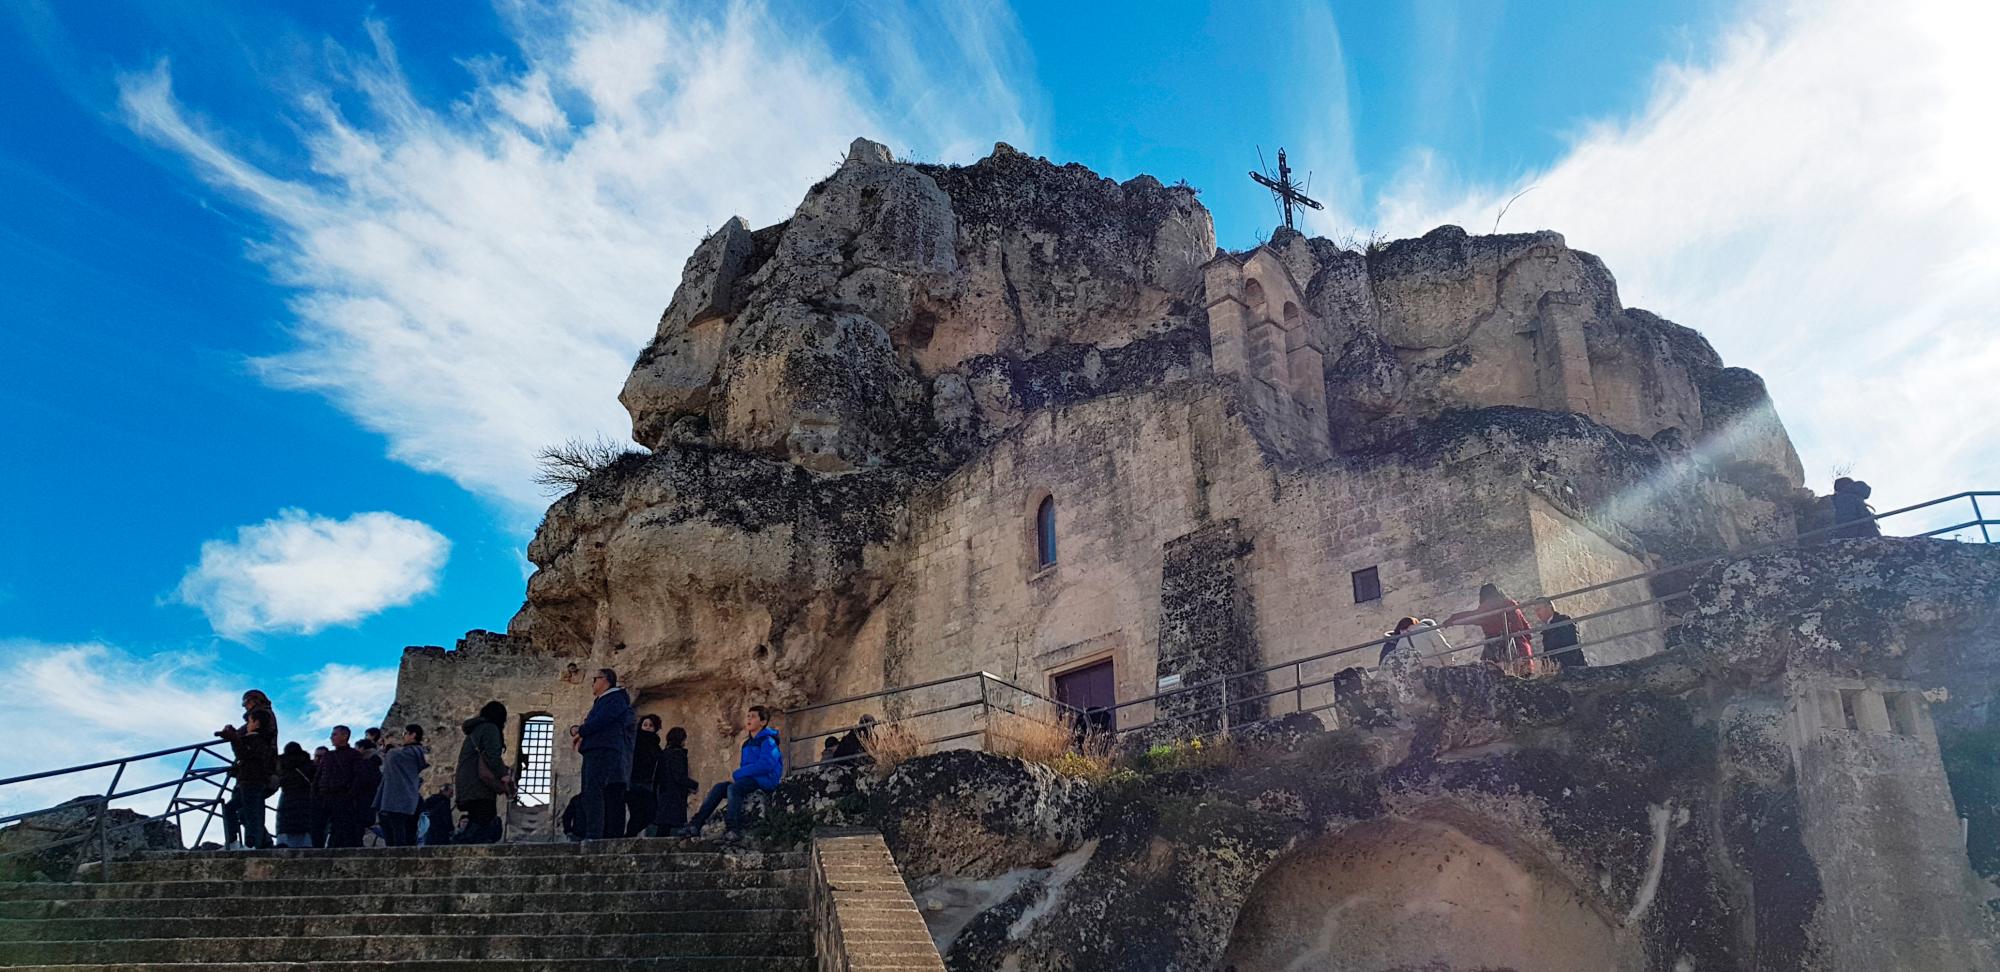 La iglesia rupestre de Santa María de Idris es una de las más impresionantes y visitadas de Matera, al encontrarse excavada en un montículo en medio del barrio de los  “Sassi“; y albergar en su interior antiguos frescos.